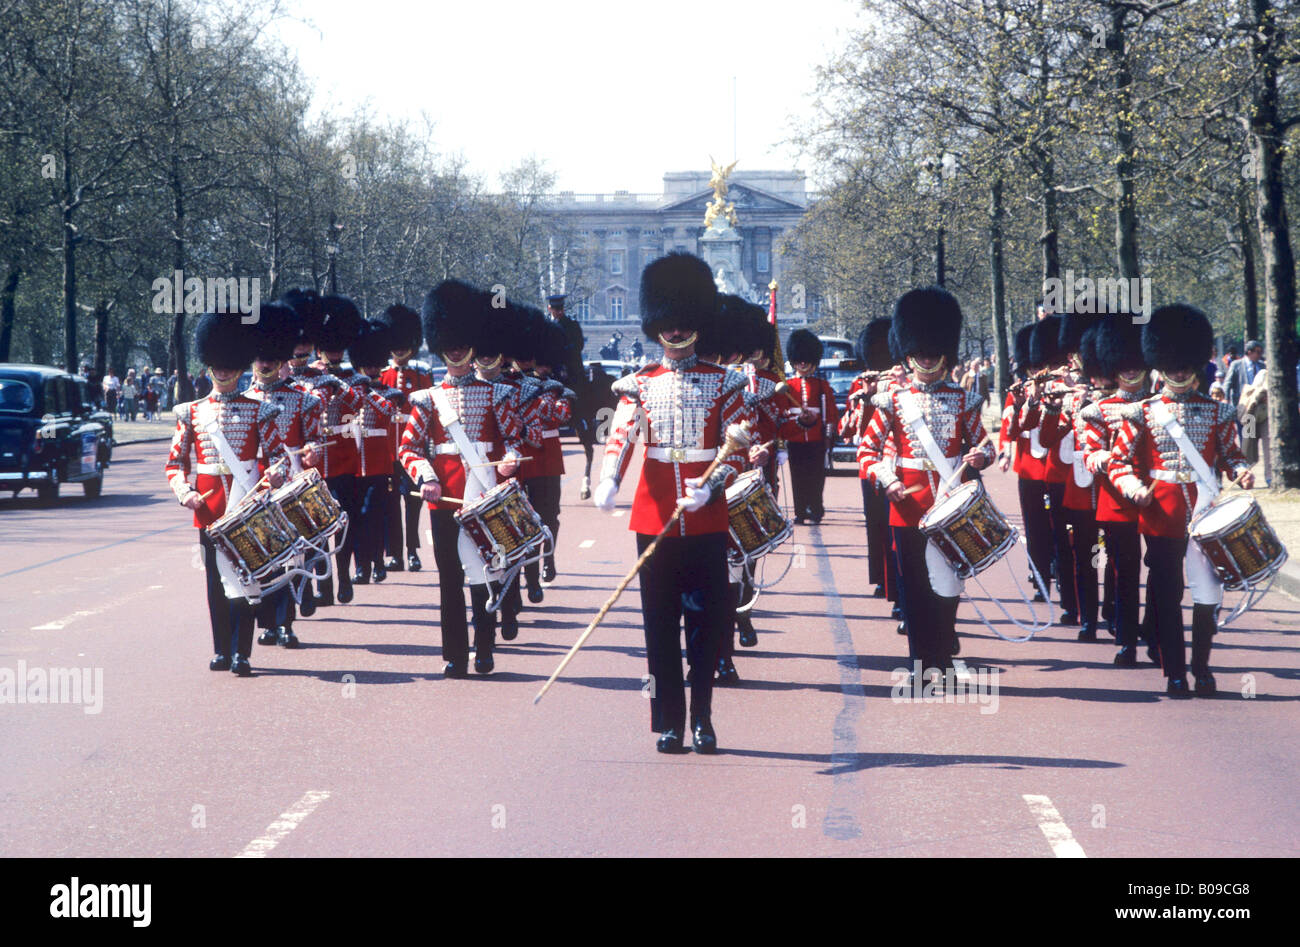 Grenadier Guards Band musiciens marchant le Mall Londres Angleterre Royaume-Uni British Army militaire uniforme de cérémonie cérémonie tambours Banque D'Images